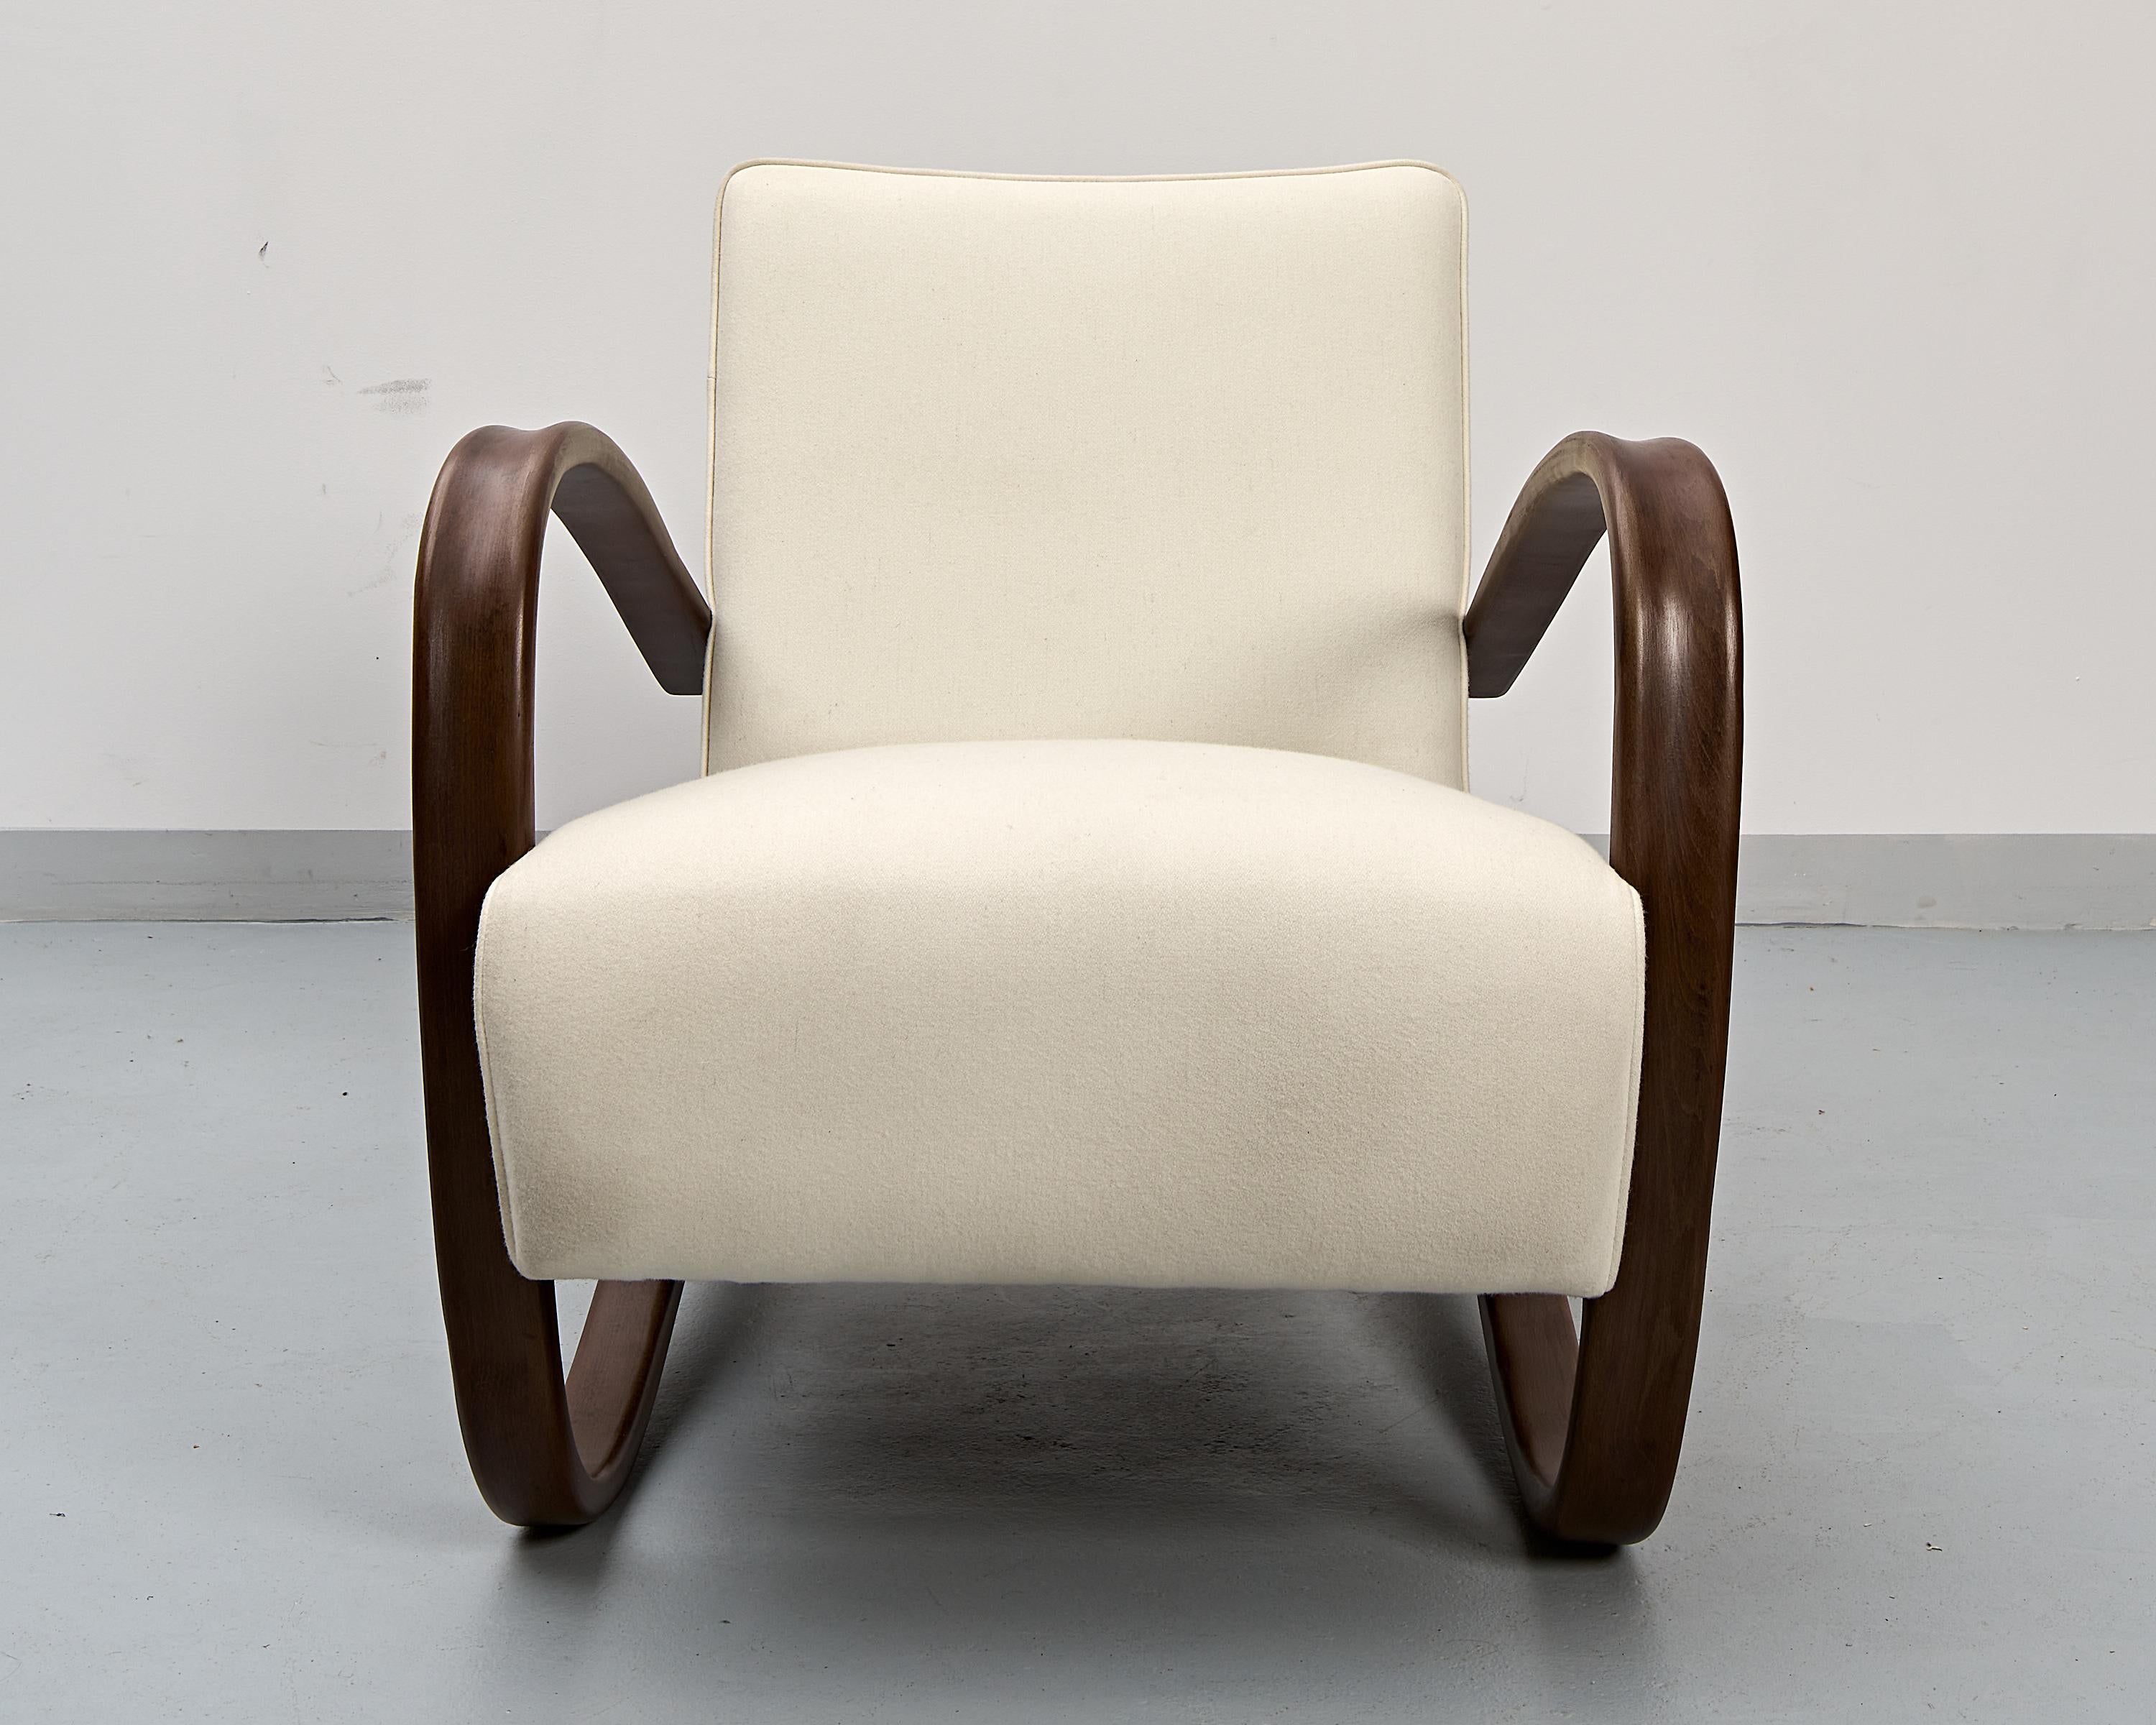 La légendaire chaise Halabala H-269 conçue par Jindřich Halabala vers 1930. L'un des designs tchécoslovaques les plus connus au monde.
Cadre en hêtre courbé, restauré avec une finition semi-mate. Sièges recréés et recouverts d'un tissu d'ameublement